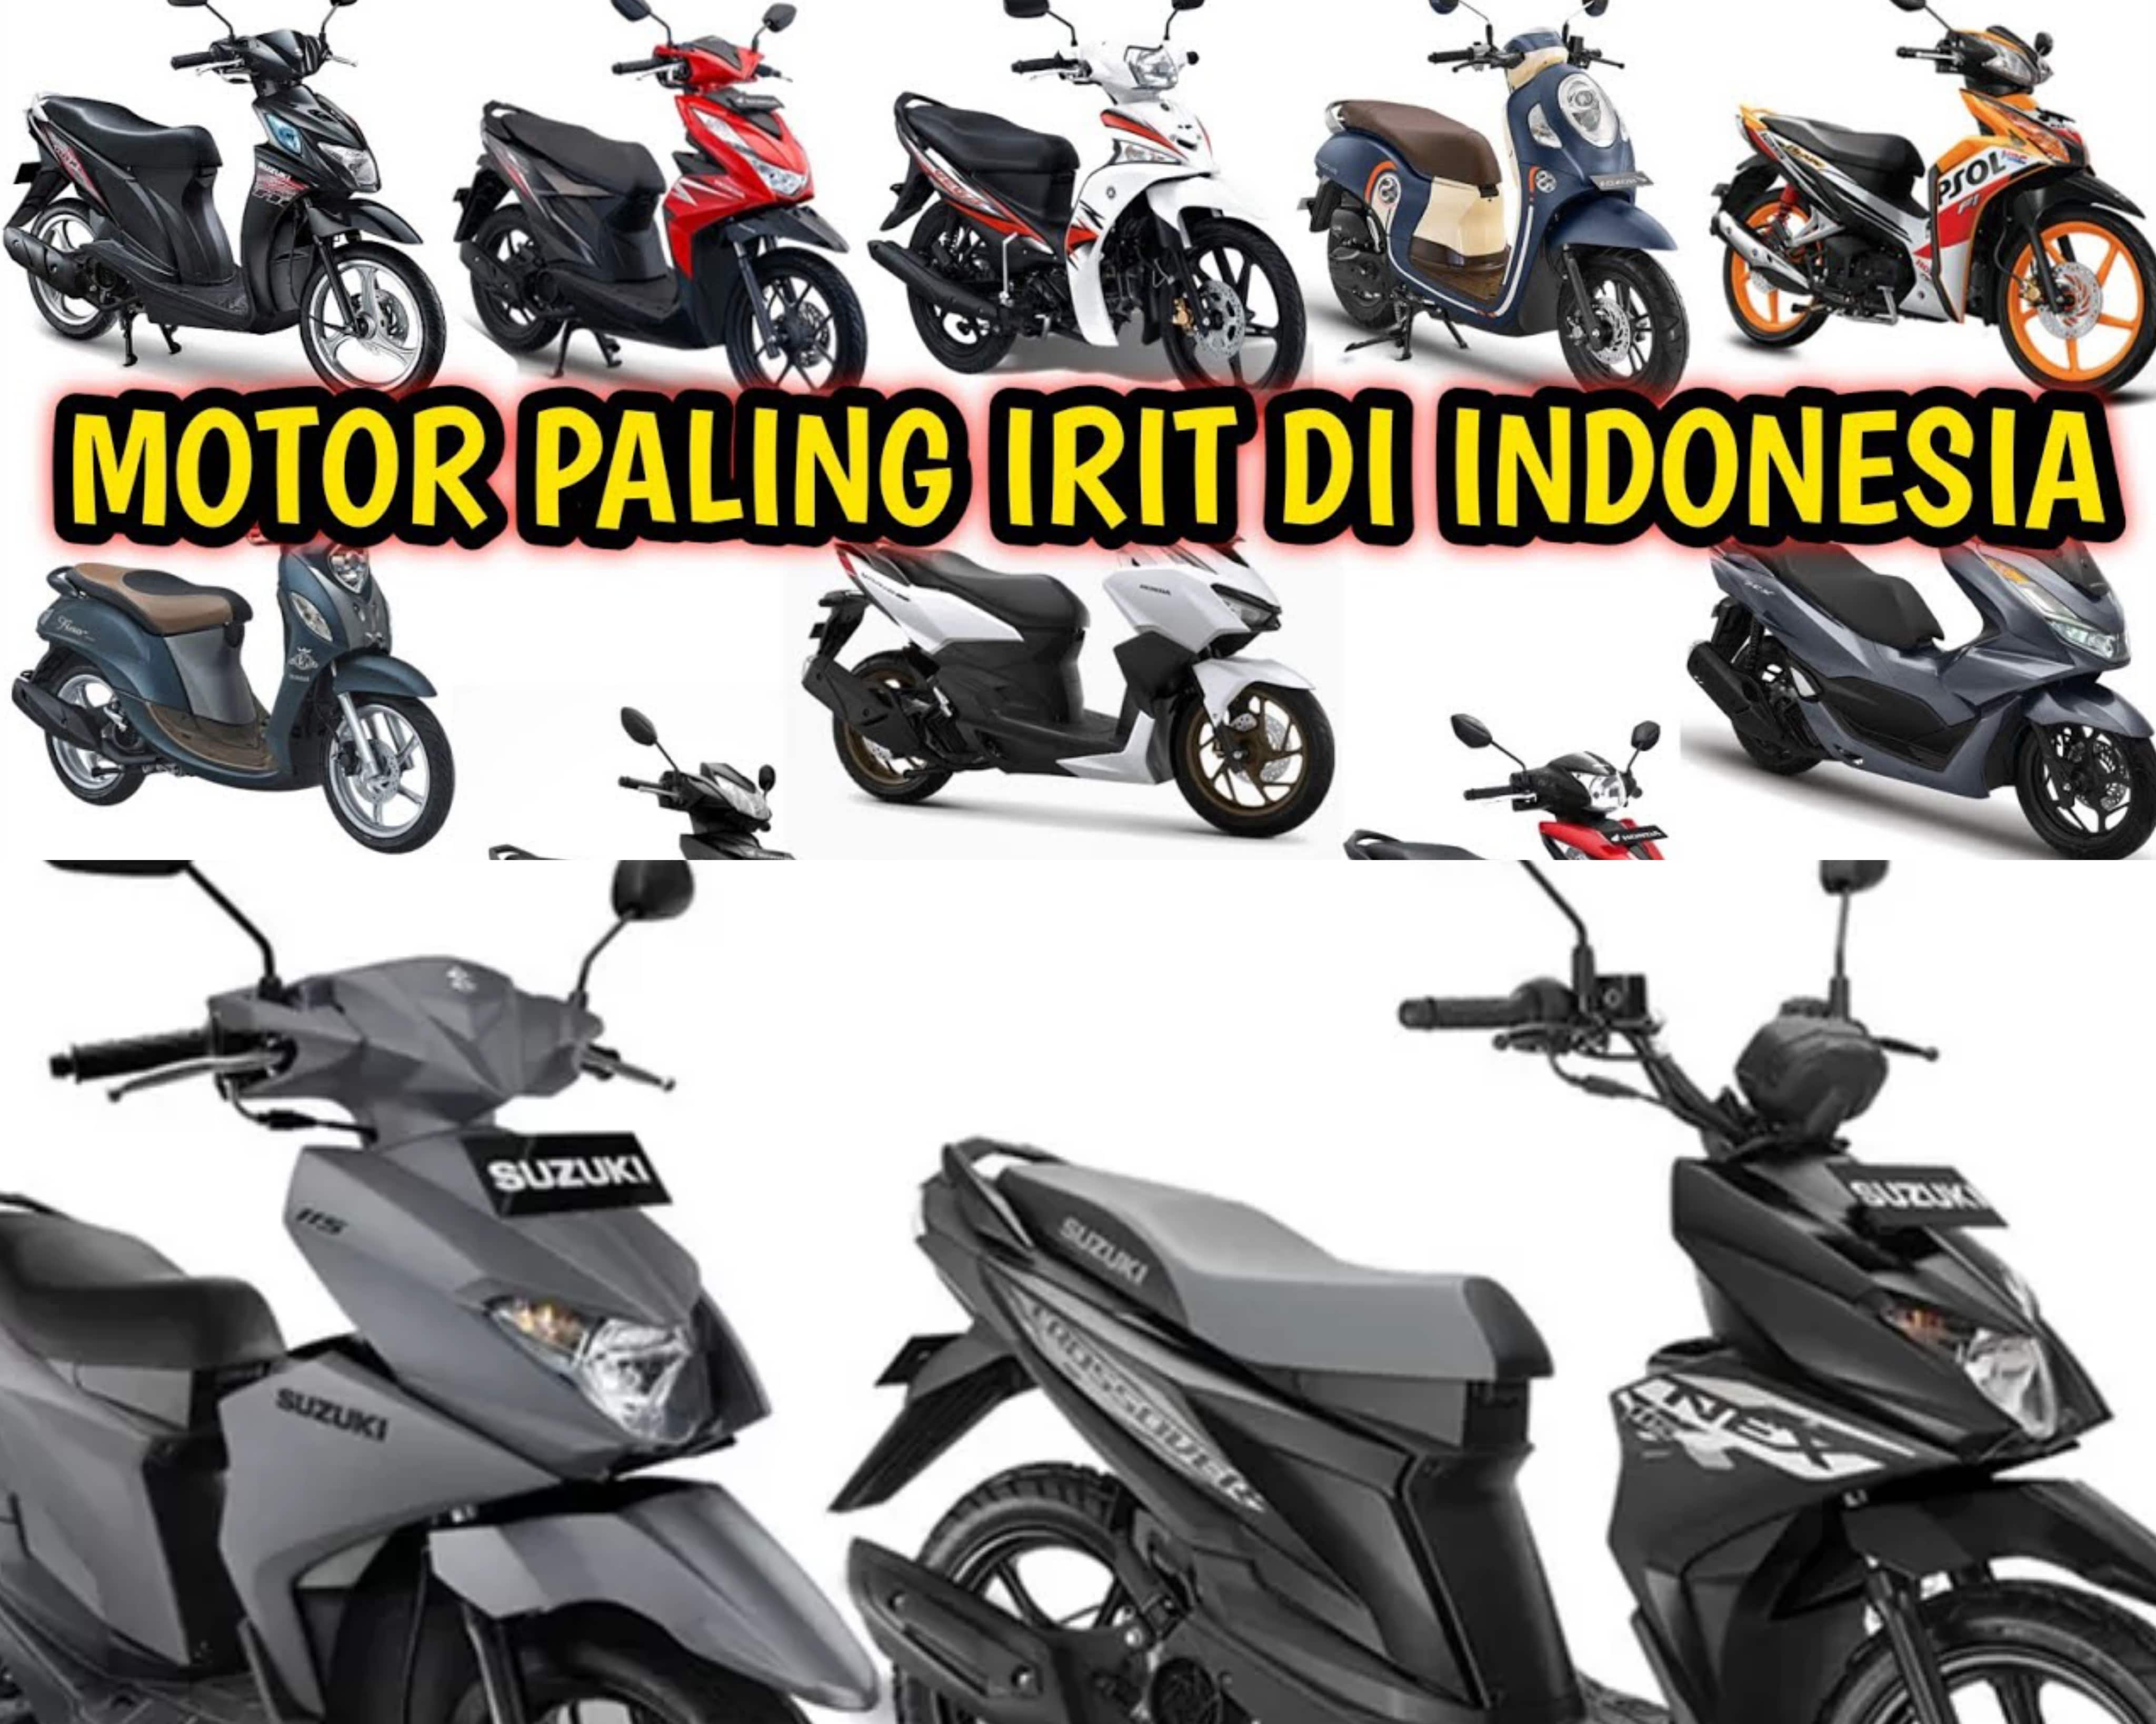 Rekomendasi 7 Motor Matic Paling Irit Dan Paling Laris Di Indonesia, Yuk Simak Daftarnya Disini! 